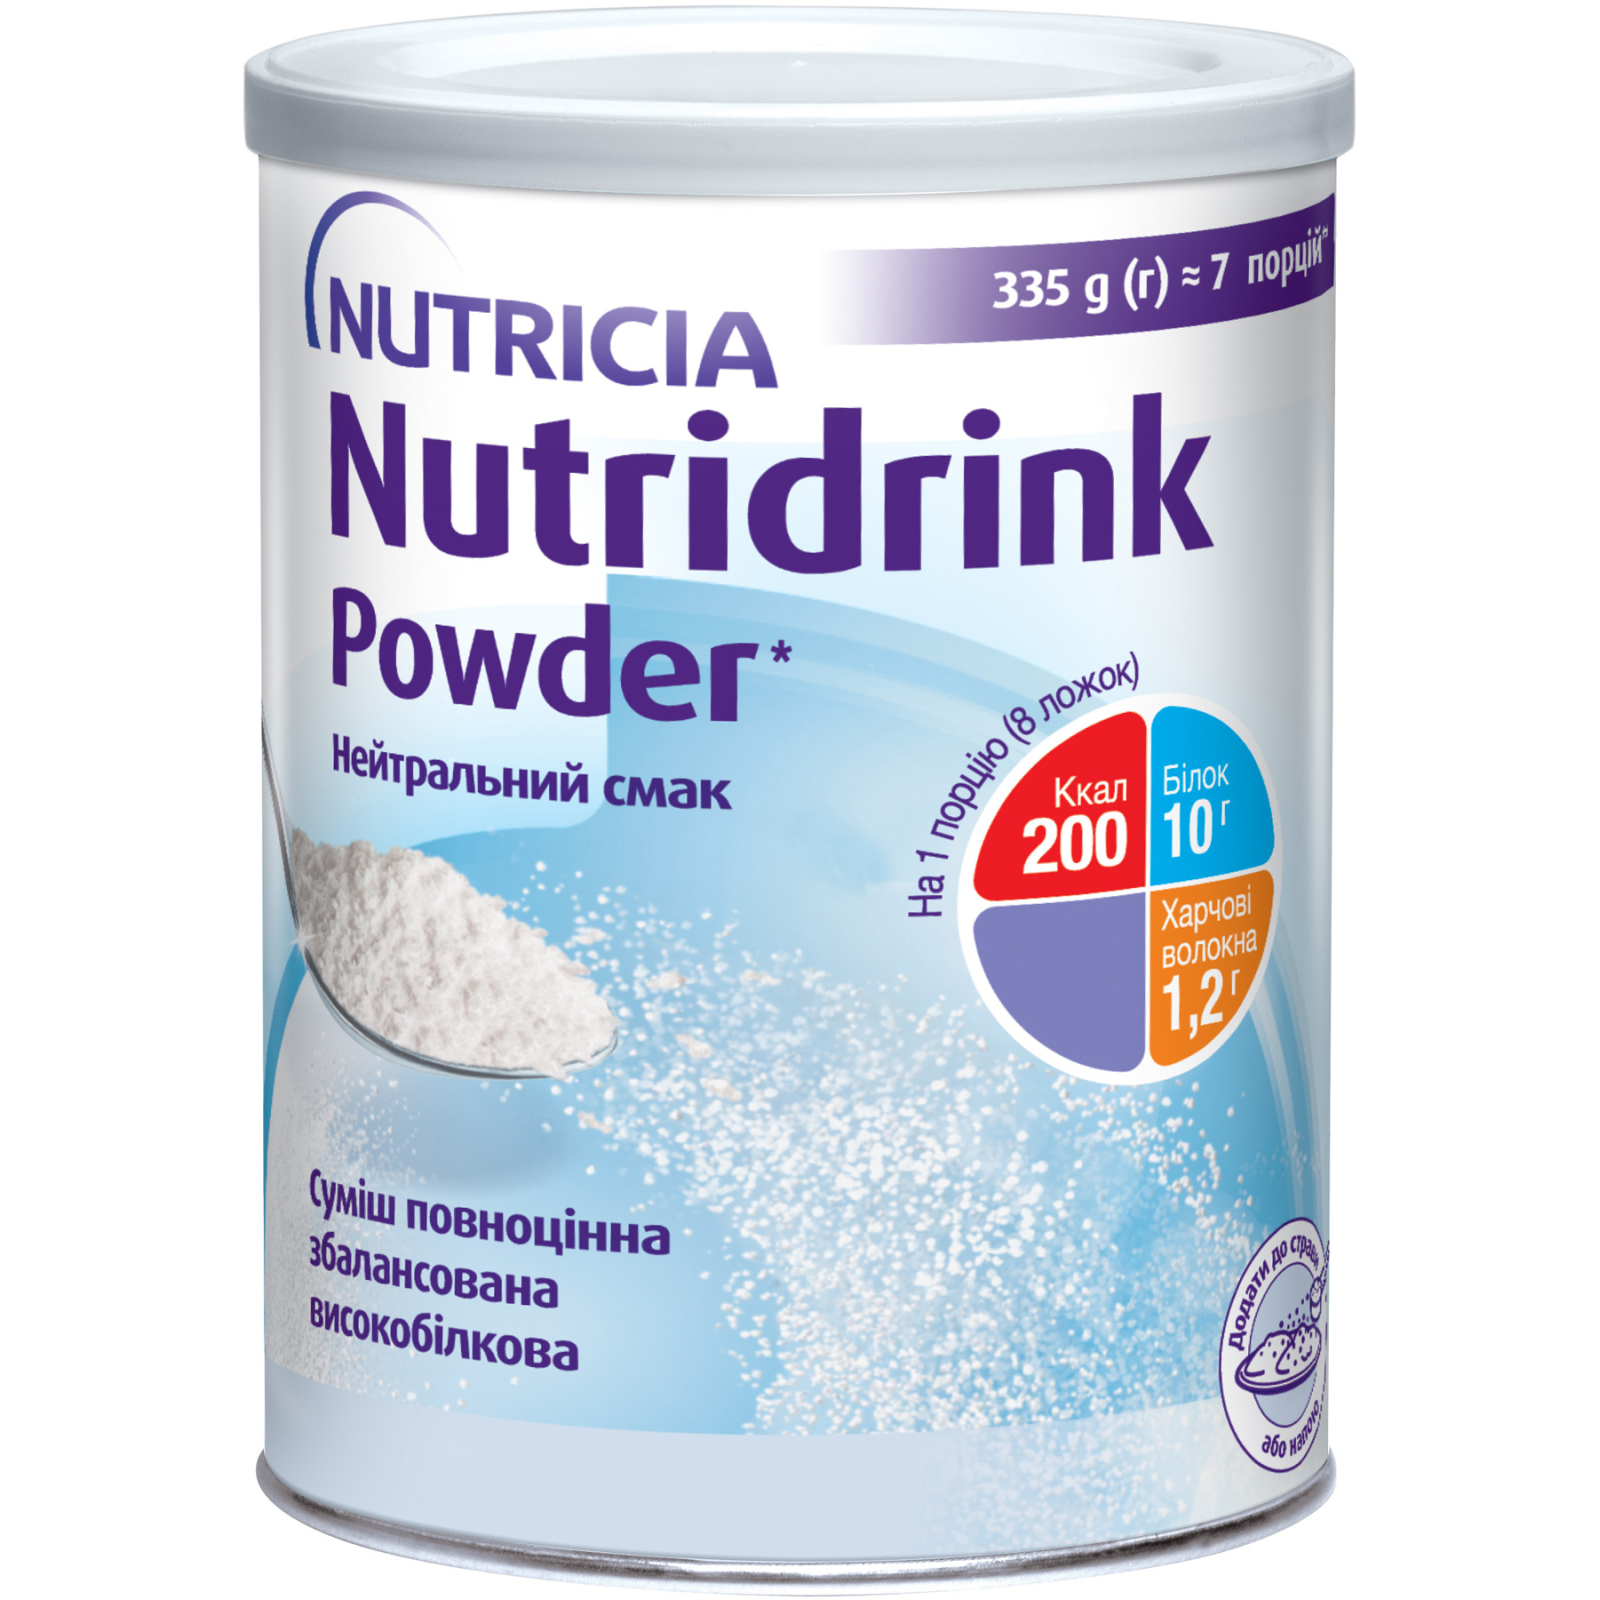 Энтеральное питание Nutricia Nutridrink Powder Neutral с высоким содержанием белка и энергии 335 г (4008976681441)